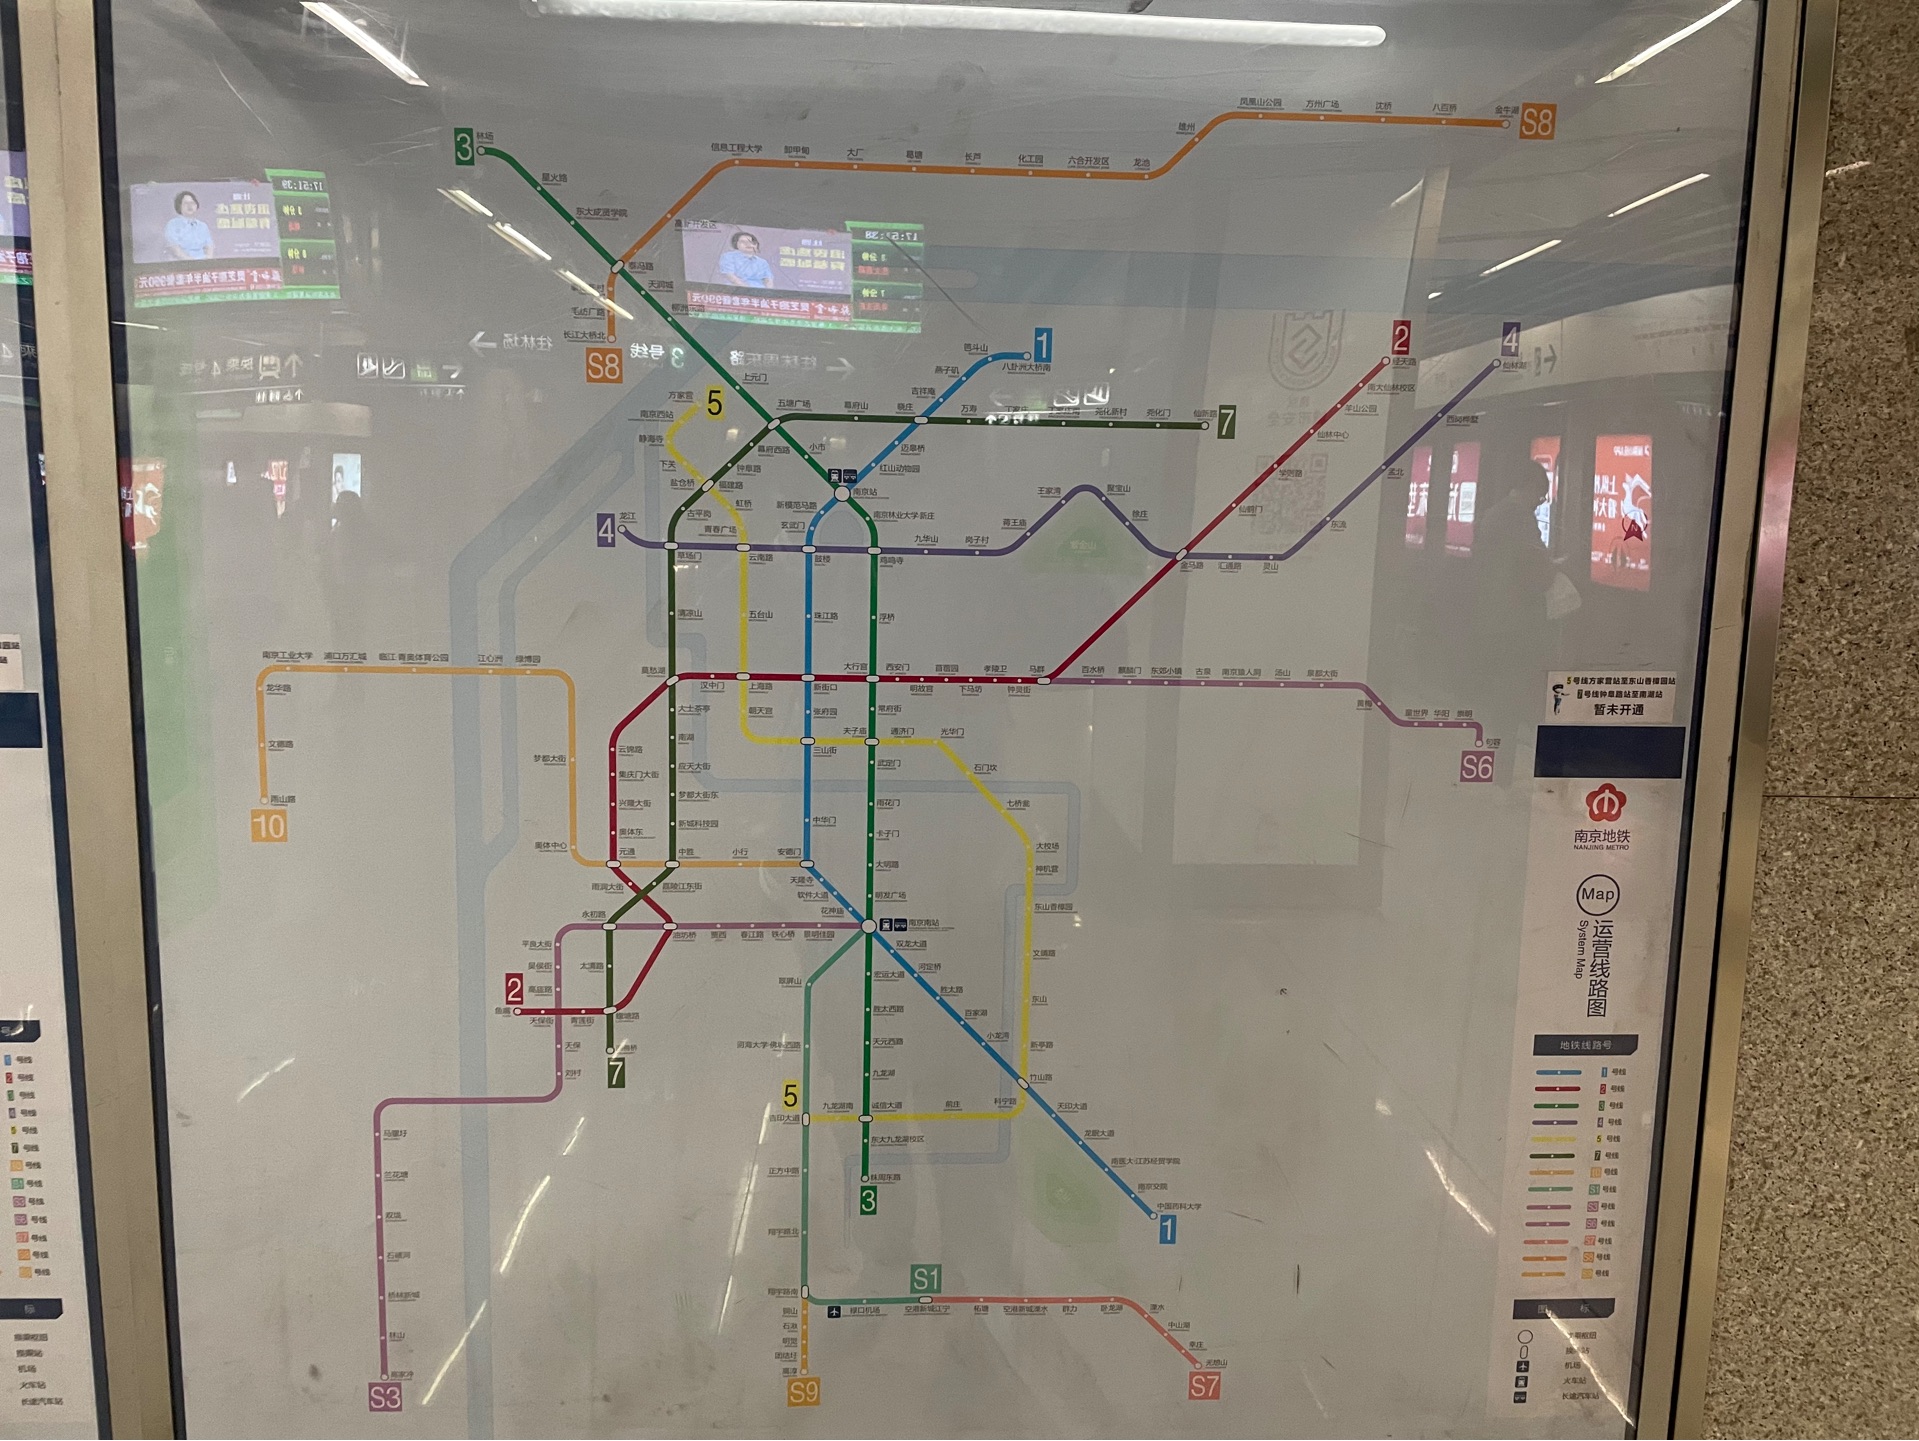 【南京地铁】新(划掉)如改过的线路图